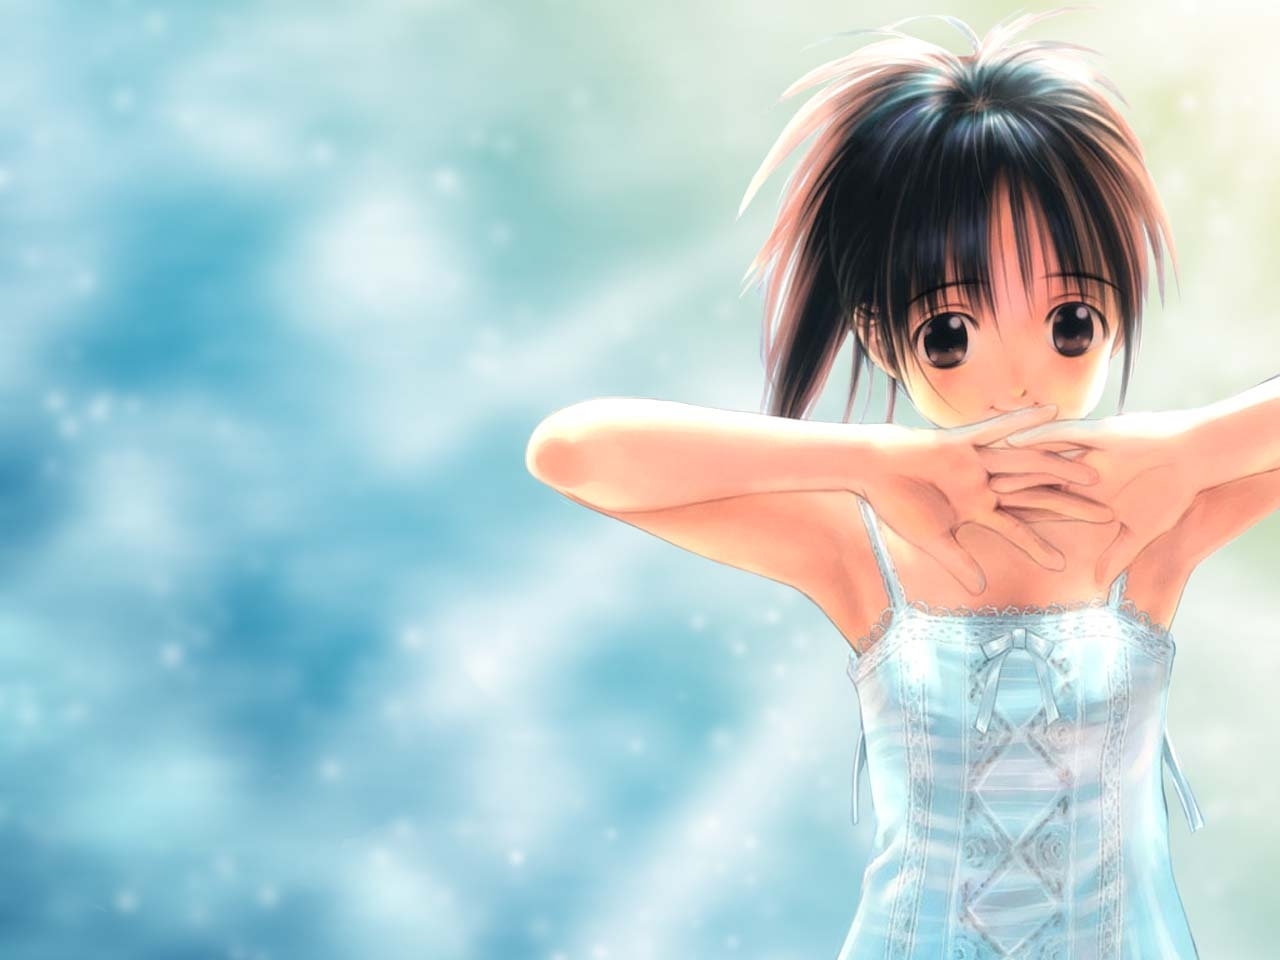 Descarga gratuita de fondo de pantalla para móvil de Chicas, Anime.